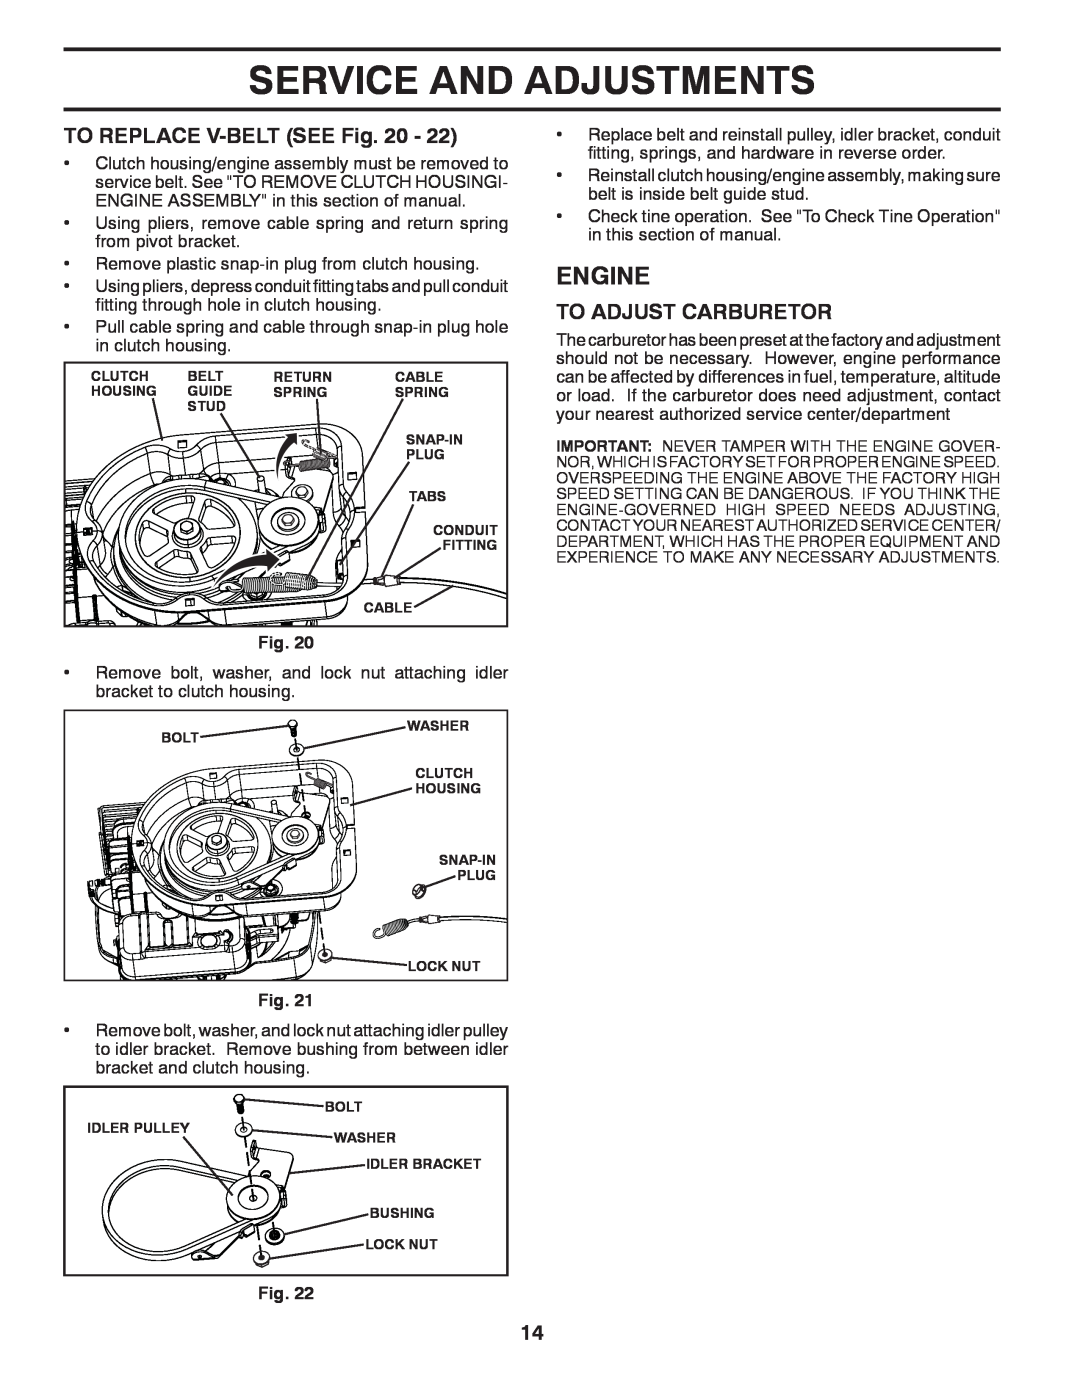 Poulan 433552, VF550, 96082001500 manual TO REPLACE V-BELT SEE Fig, To Adjust Carburetor, Service And Adjustments, Engine 